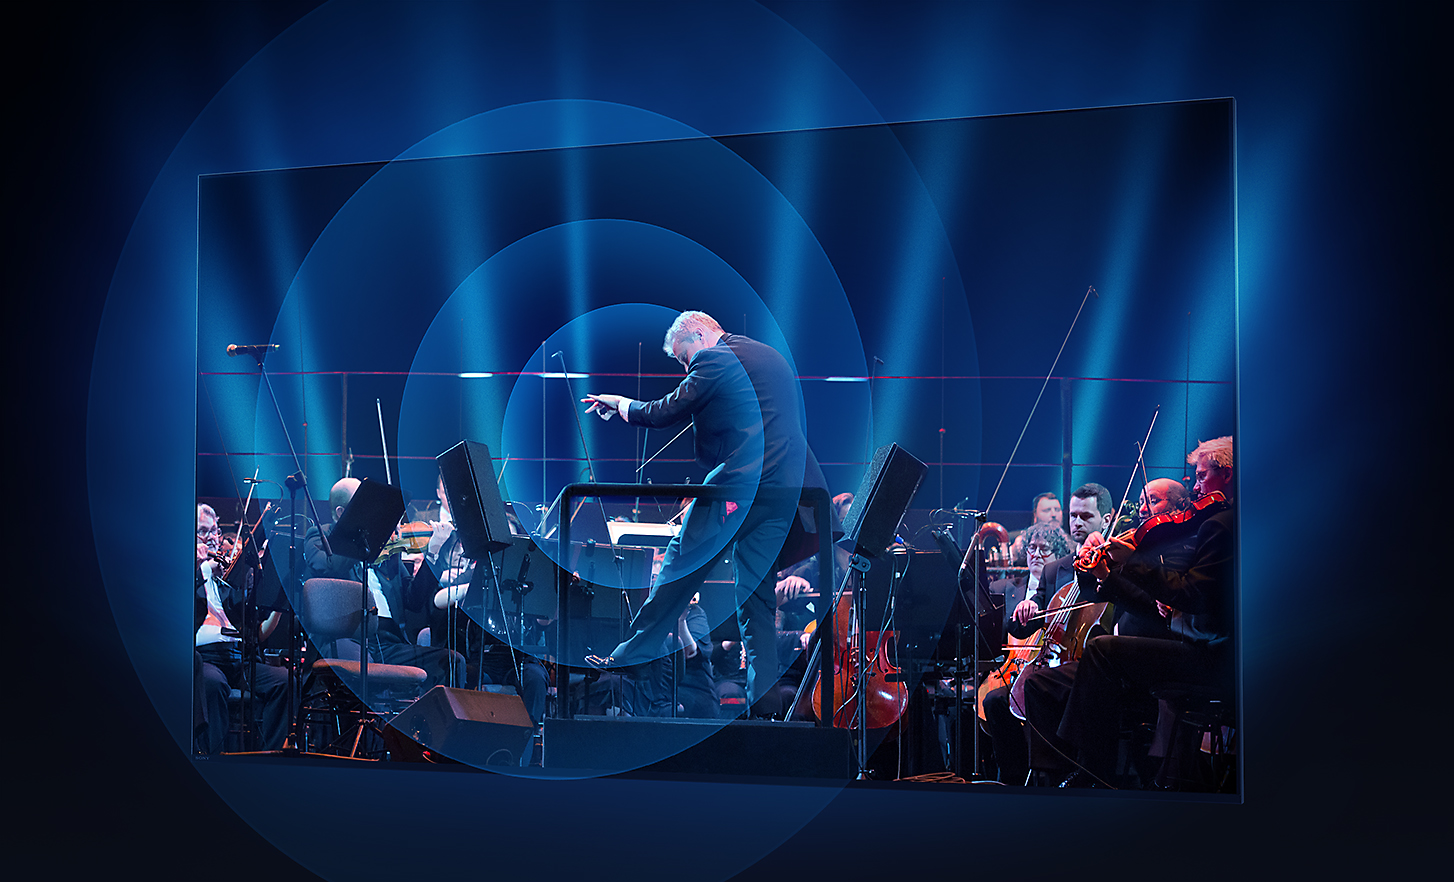 Scherm van een BRAVIA-tv met een dirigent en orkest en geluidsgolven die in concentrische cirkels vanuit het midden van het scherm komen